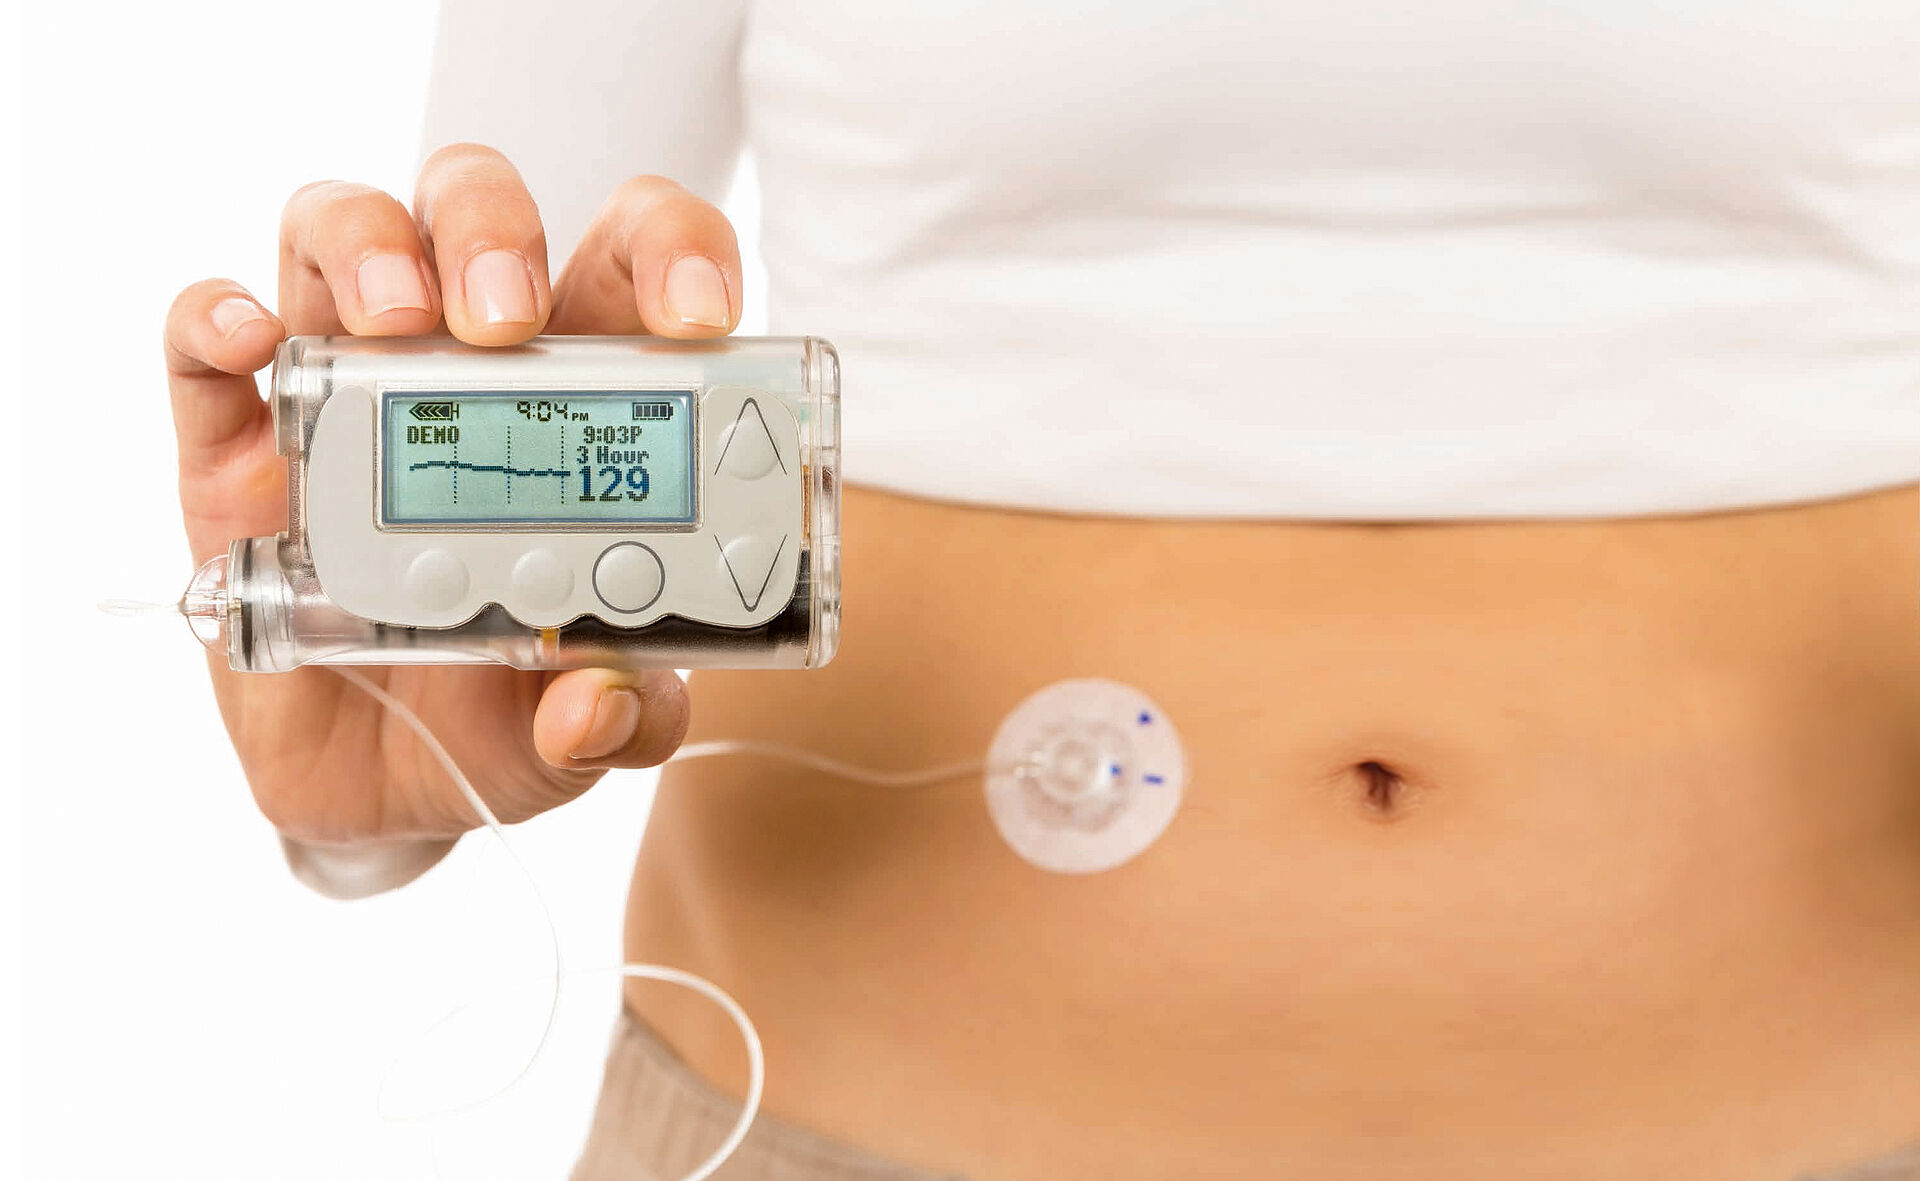 直流无刷电机 胰岛素泵能简化糖尿病患者的生活